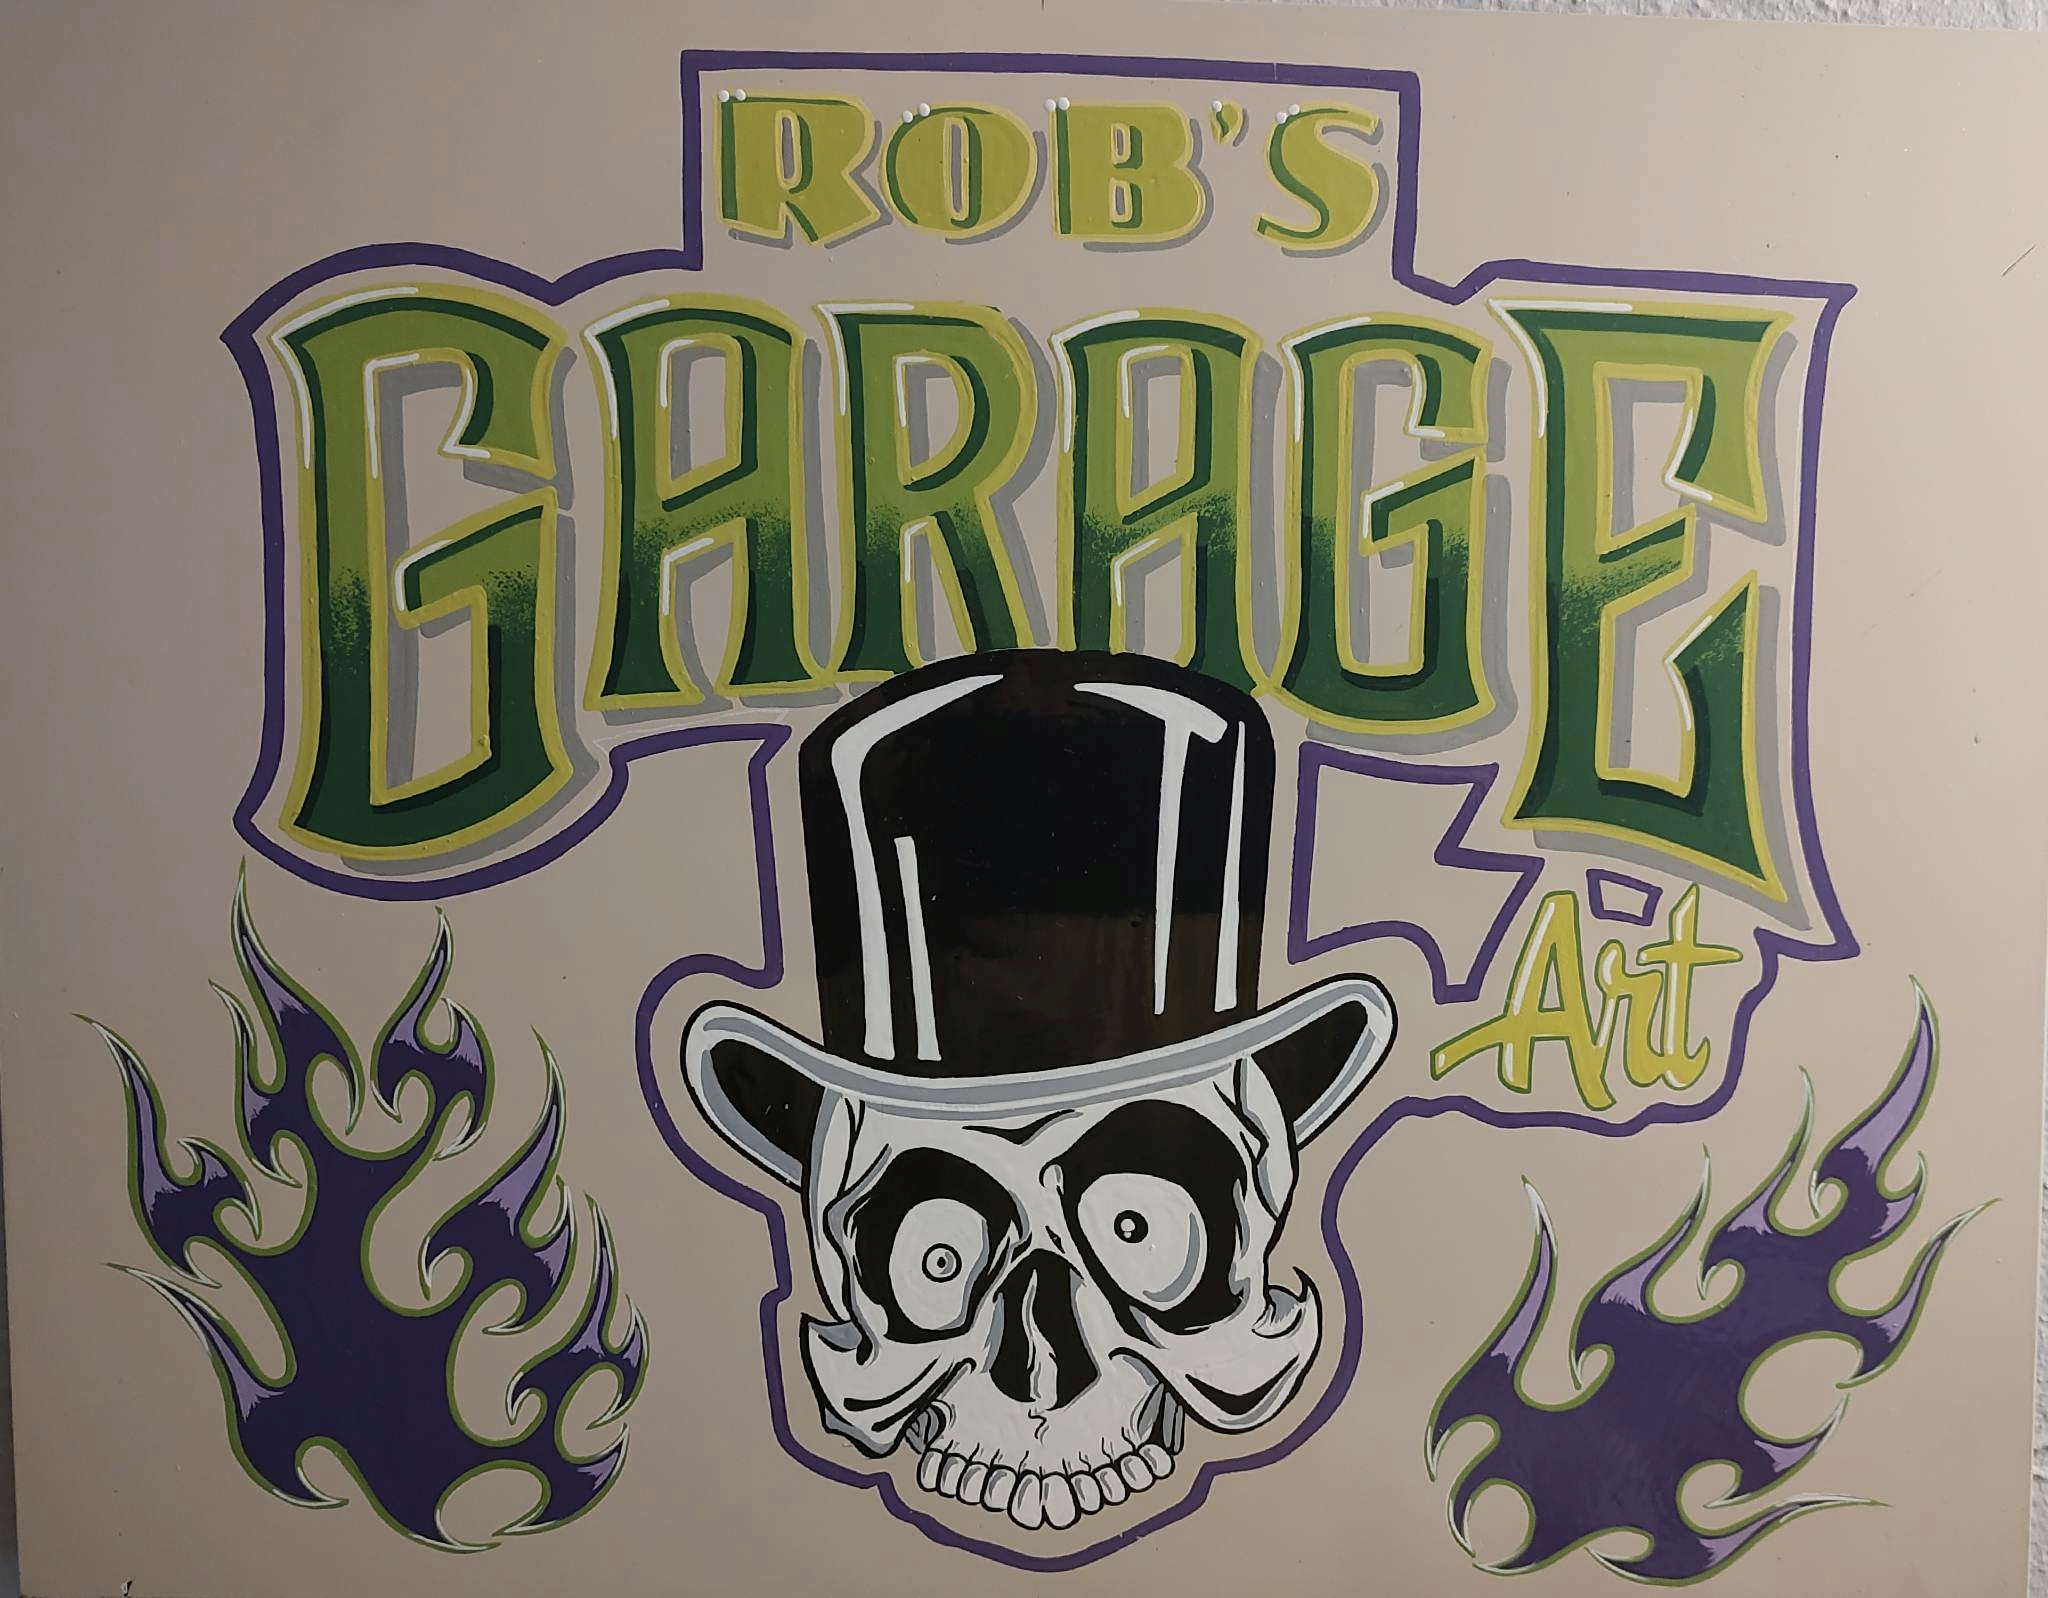 Rob's Garage